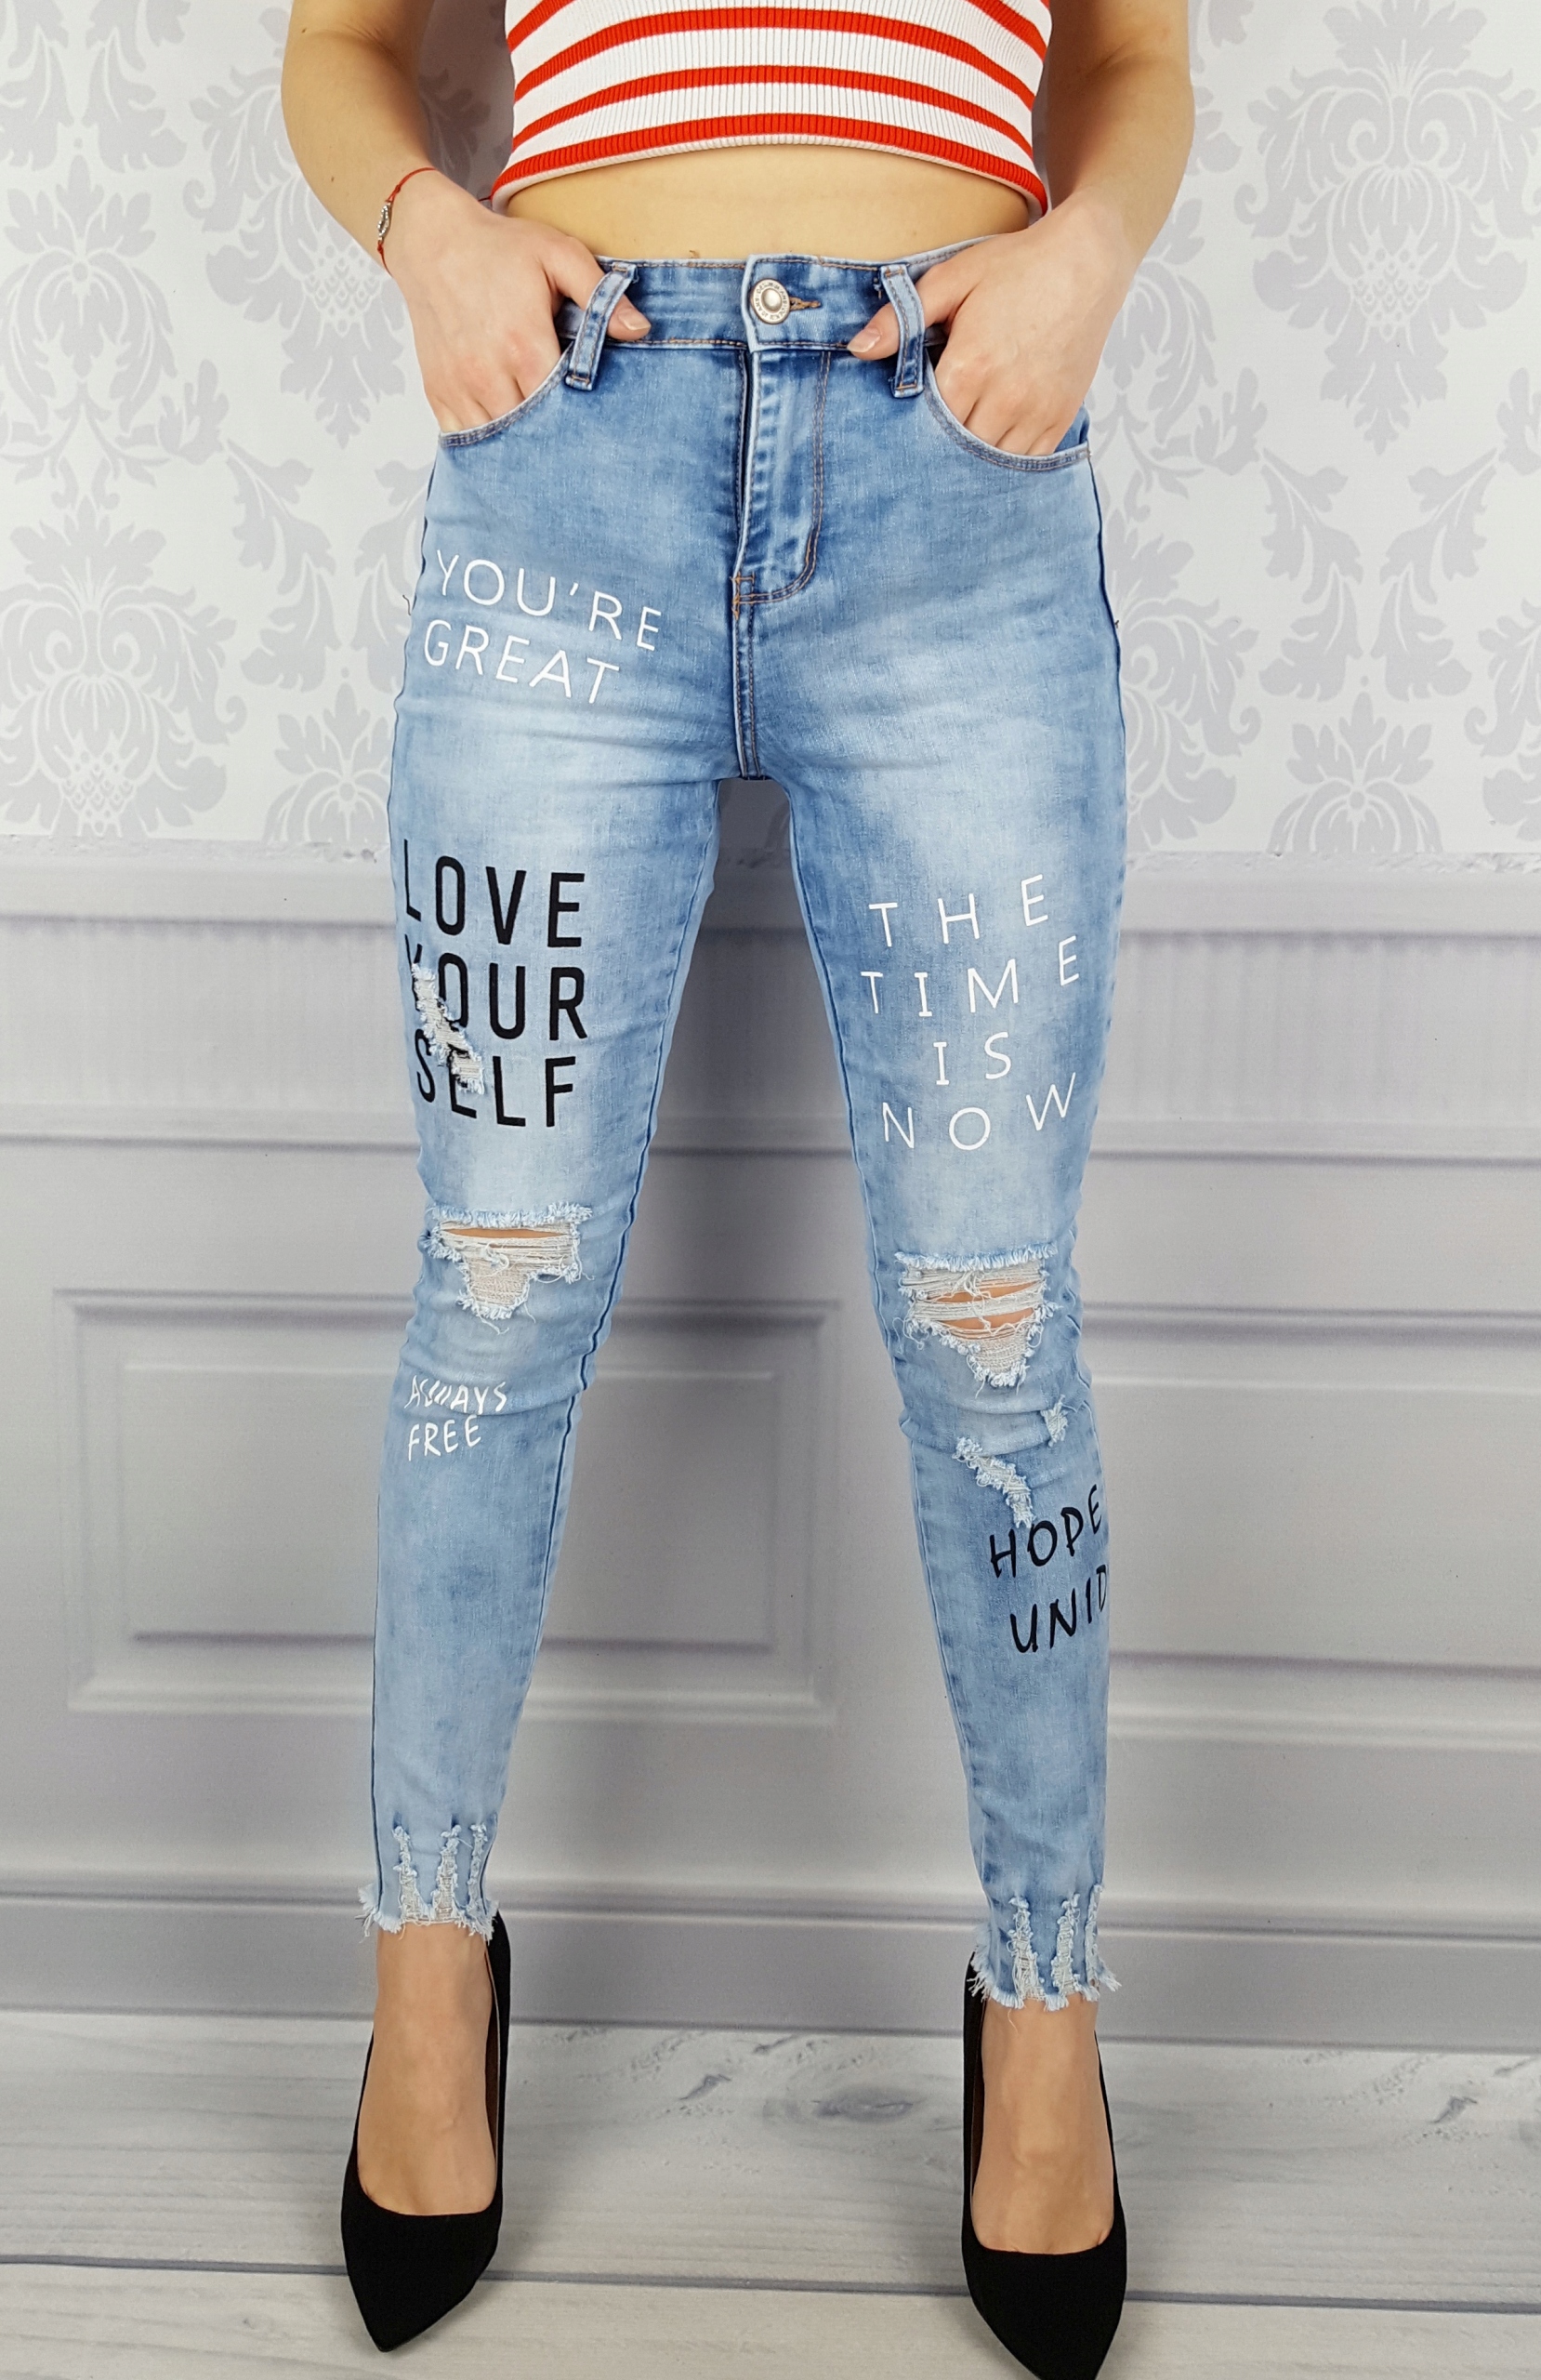 Alabama gender Women моделирующие джинсовые брюки